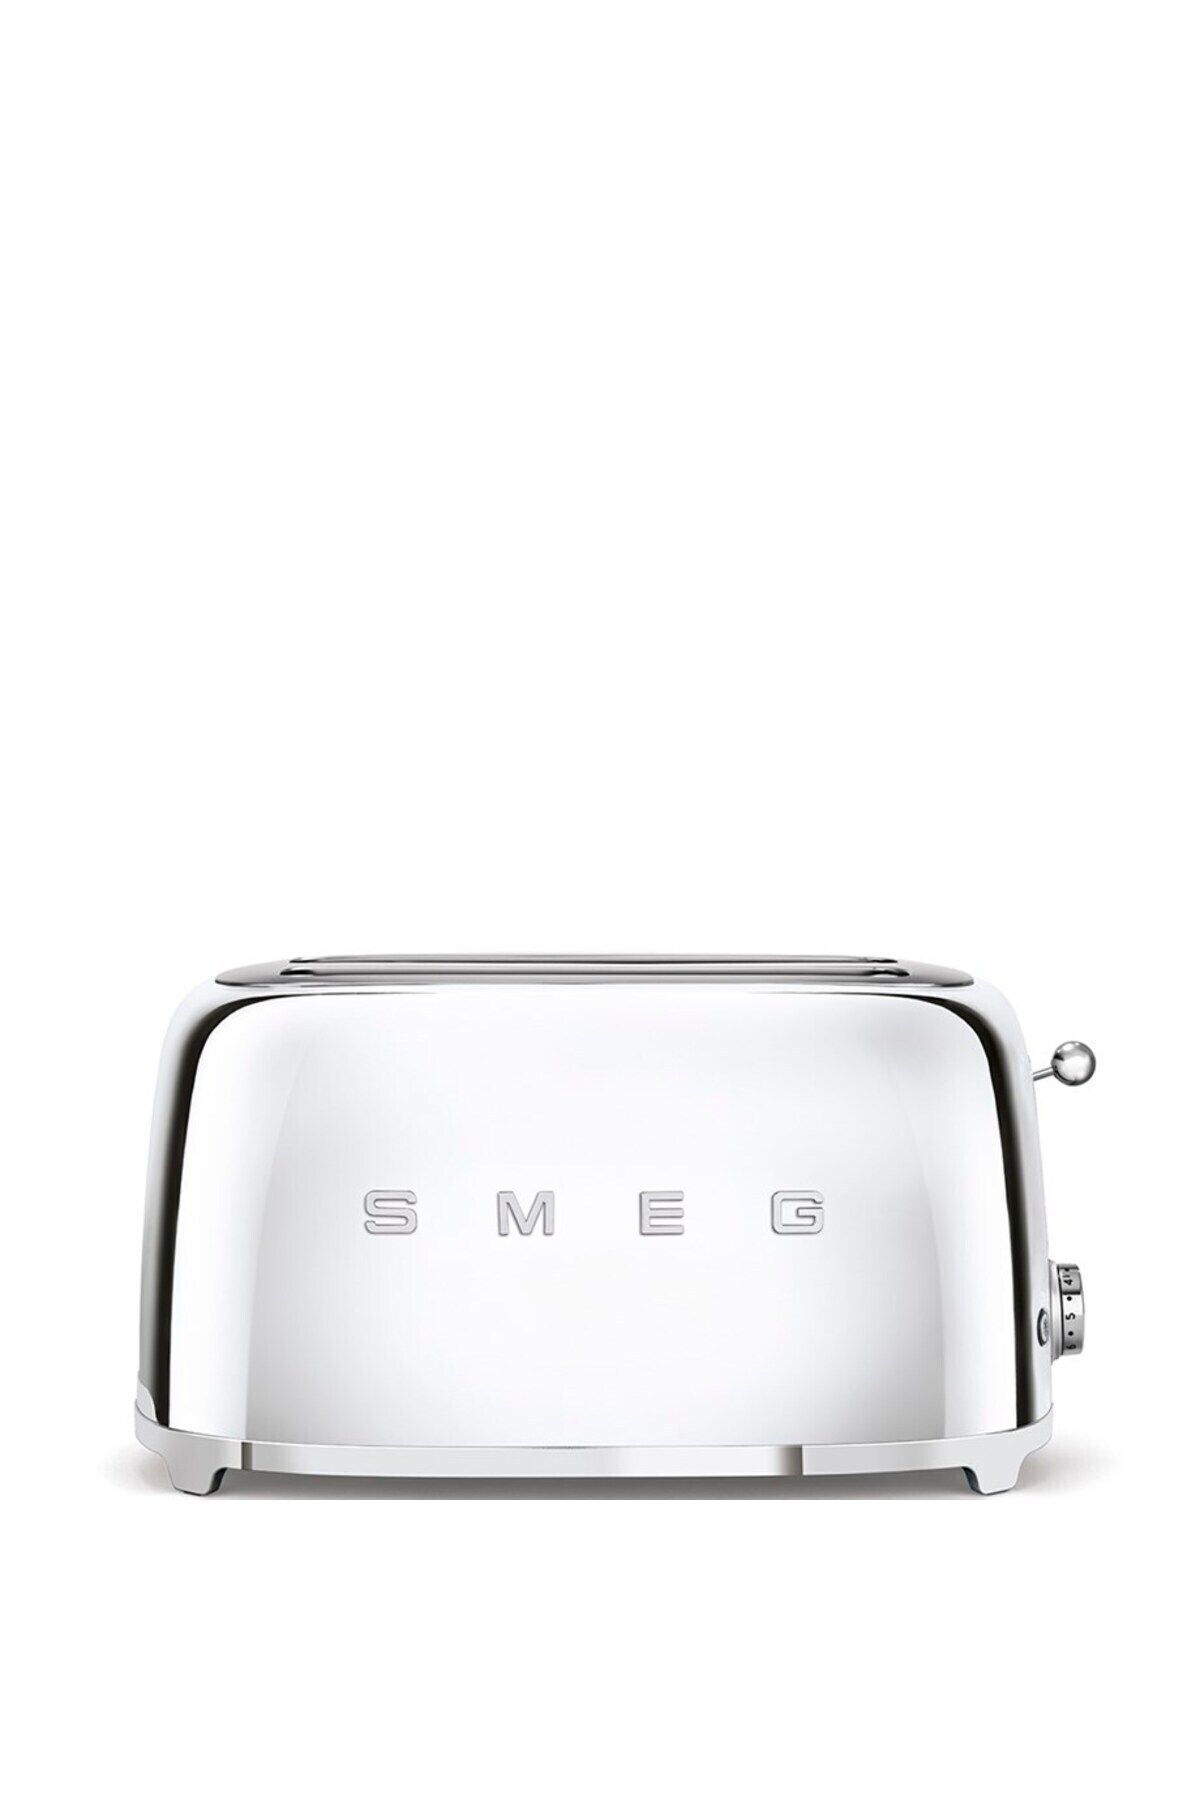 Smeg Çelik Rengi Ekmek Kızartma Makinesi 2x4